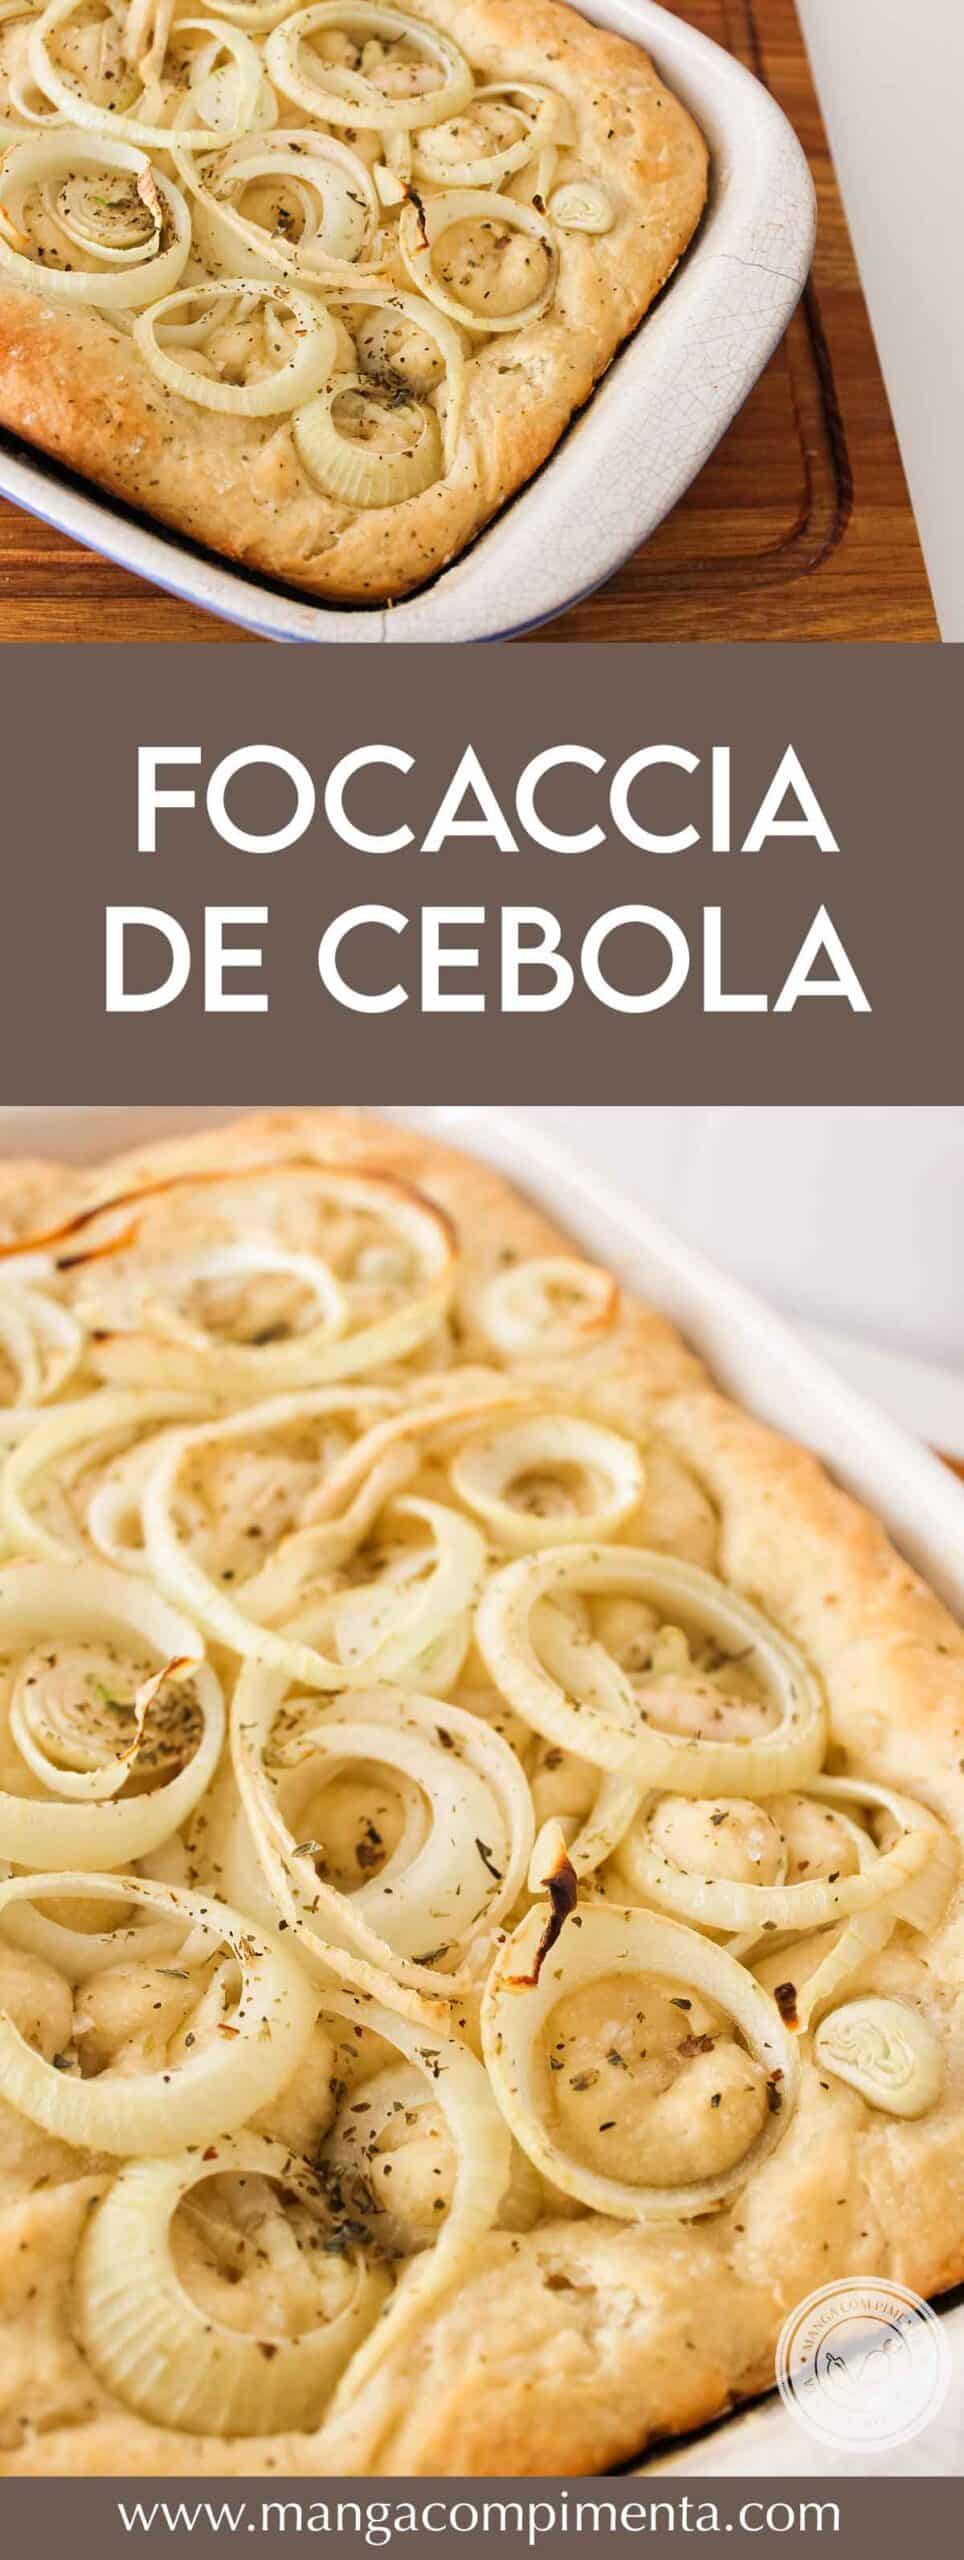 Receita de Focaccia de Cebola - prepare um pão Italiano recheado para o lanche do final de semana.